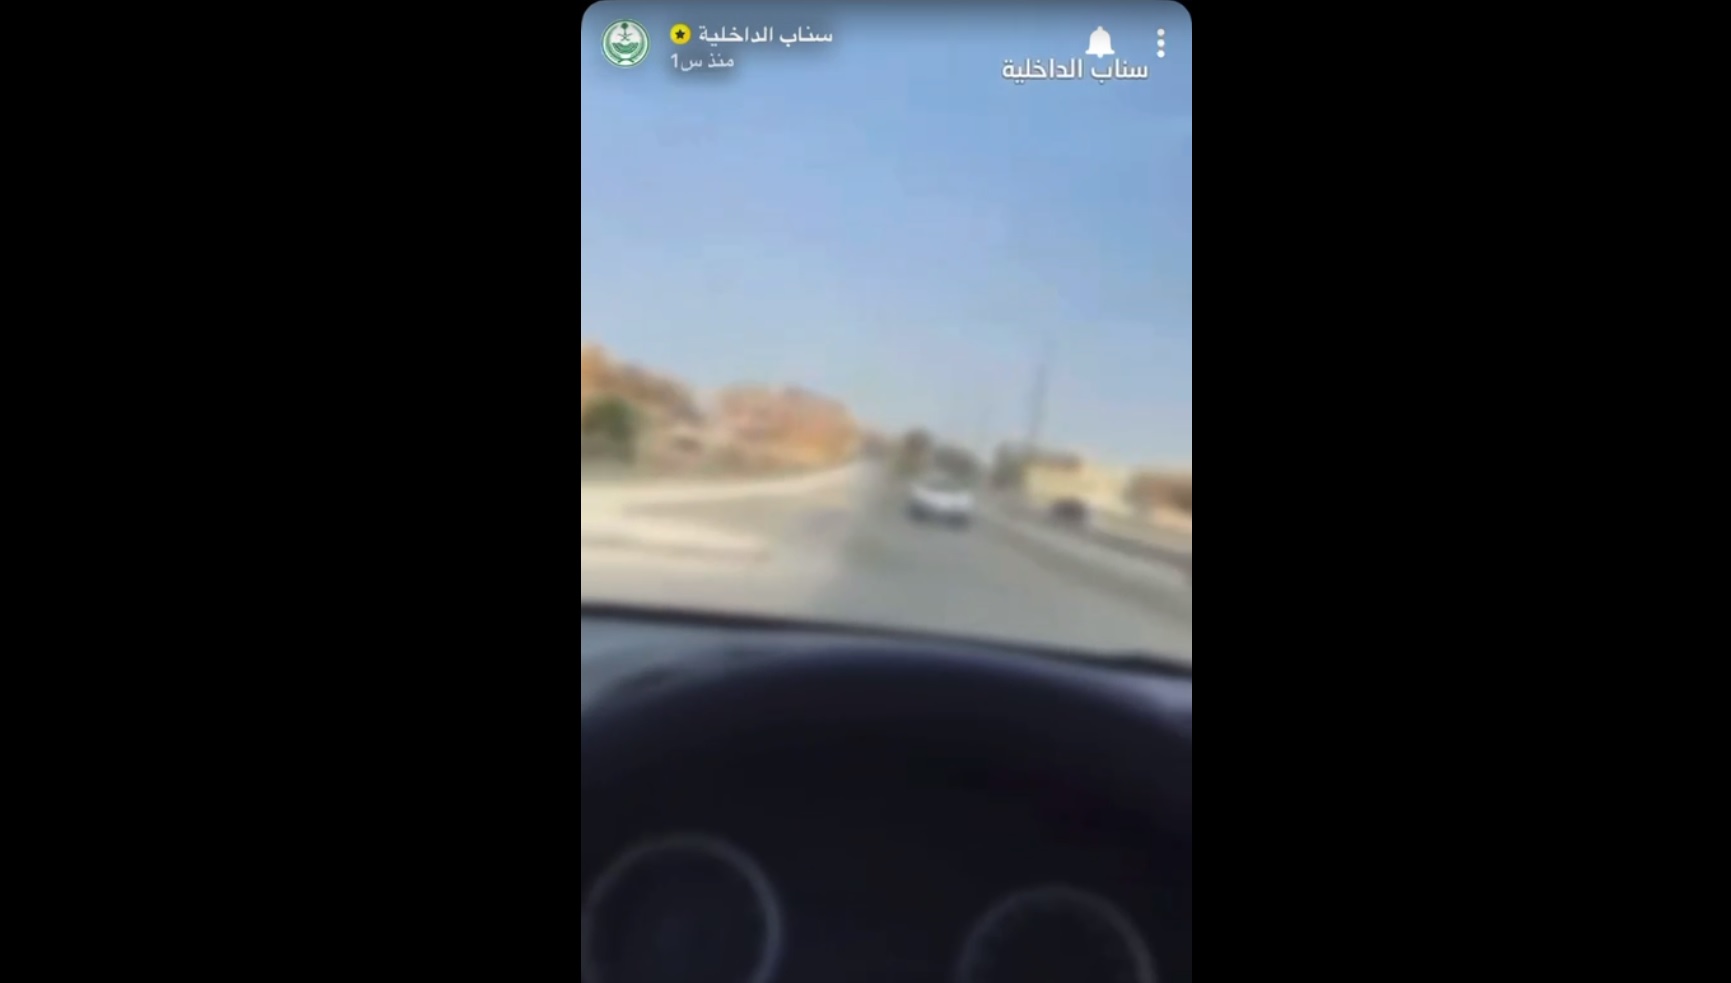 القبض على مواطن في الرياض بسبب التفحيط والسير عكس الاتجاه